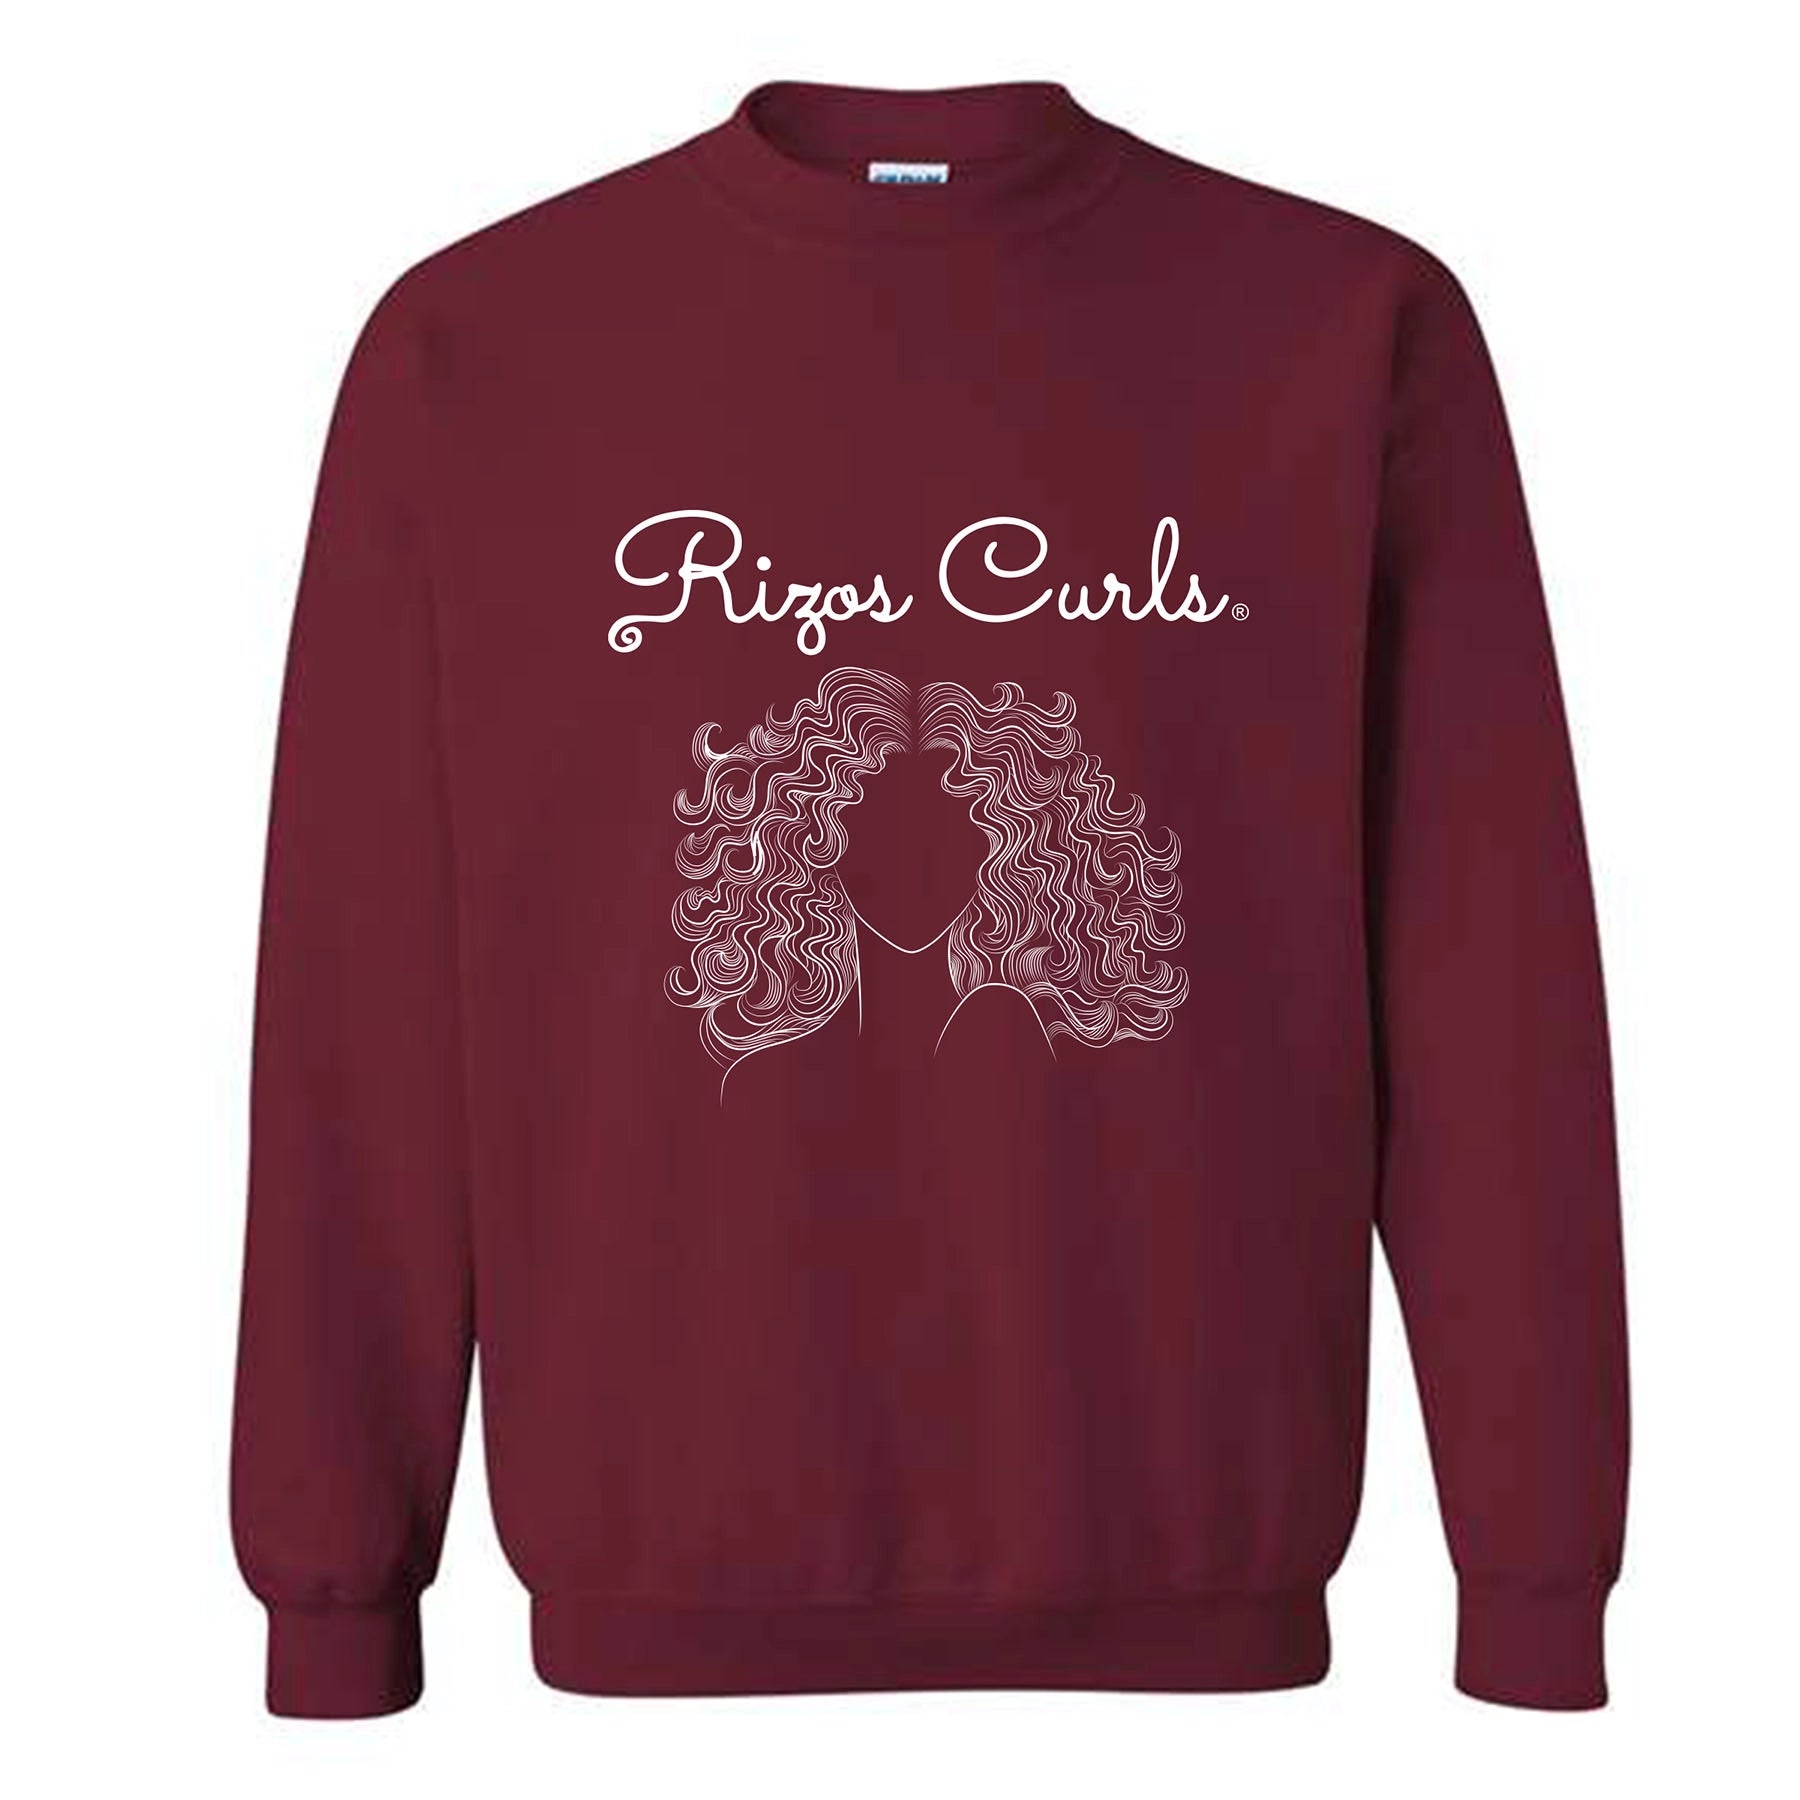 SOLD OUT - Rizos Curls Sweatshirt: Burgundy